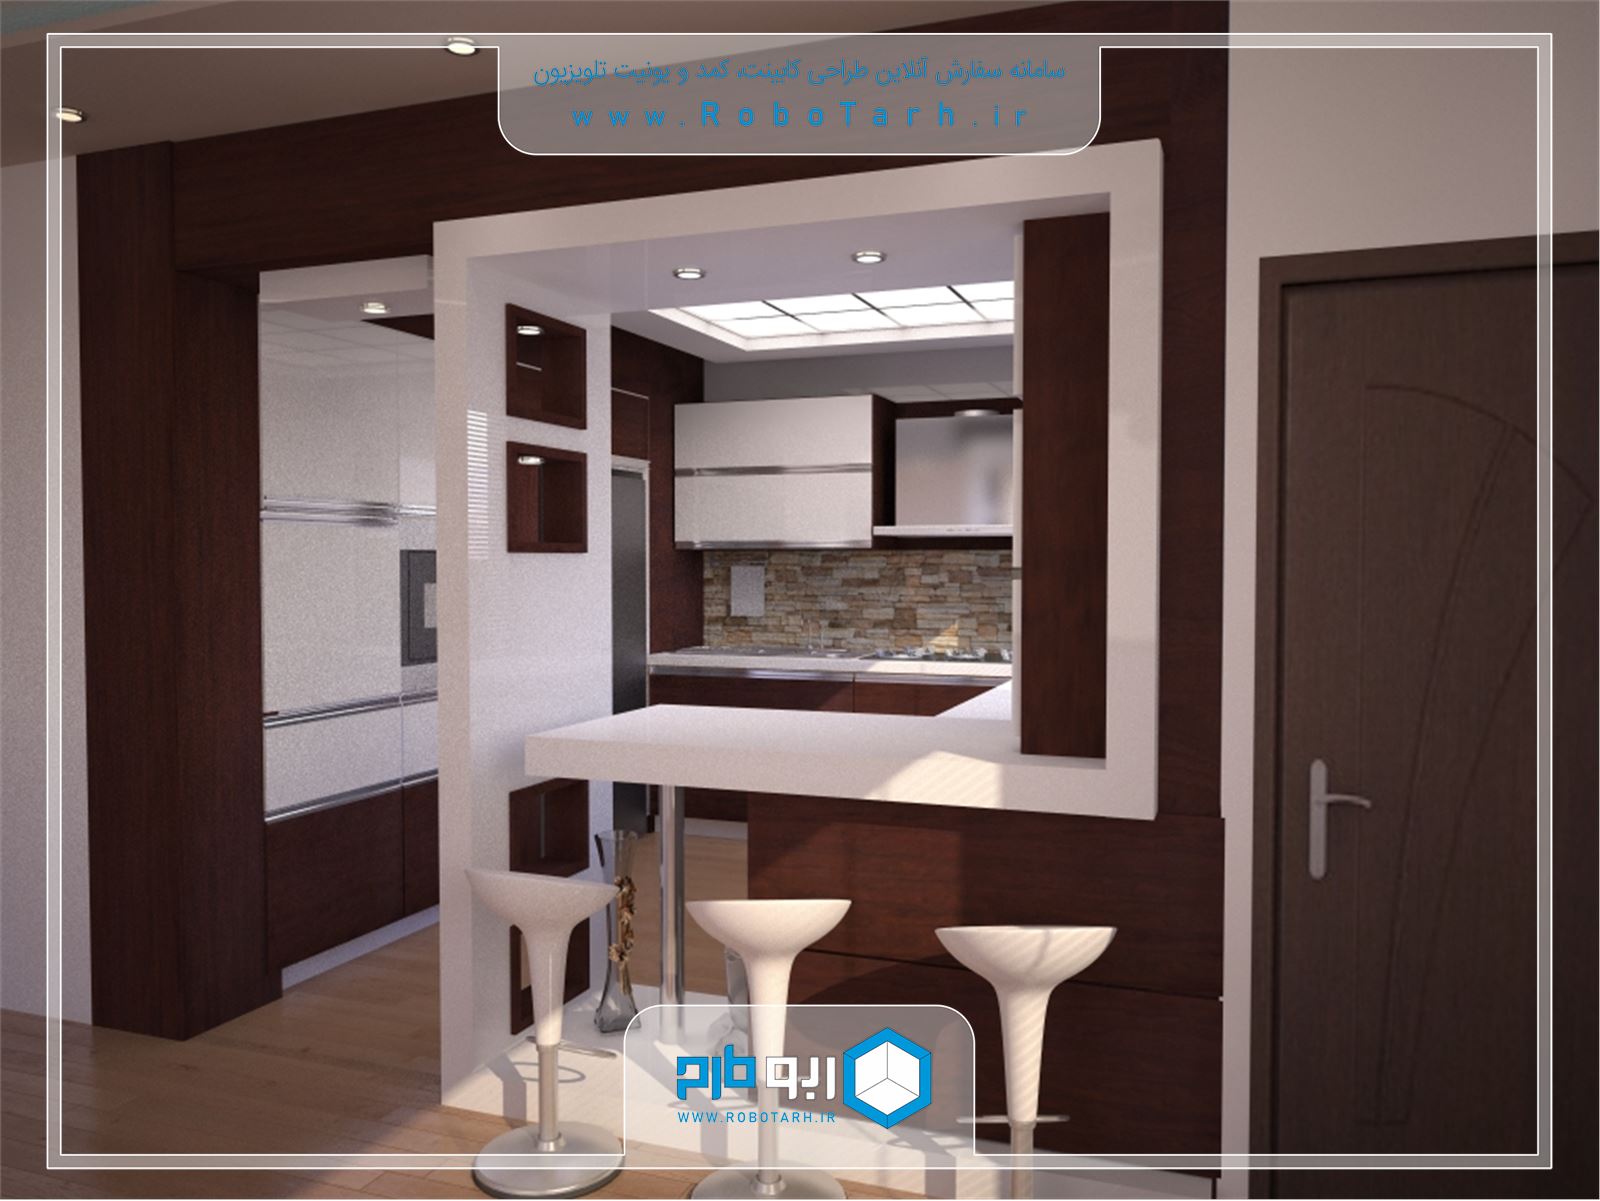 طراحی کابینت آشپزخانه سفید و قهوه ای رنگ به سبک مدرن با چیدمان یو شکل - ربوطرح